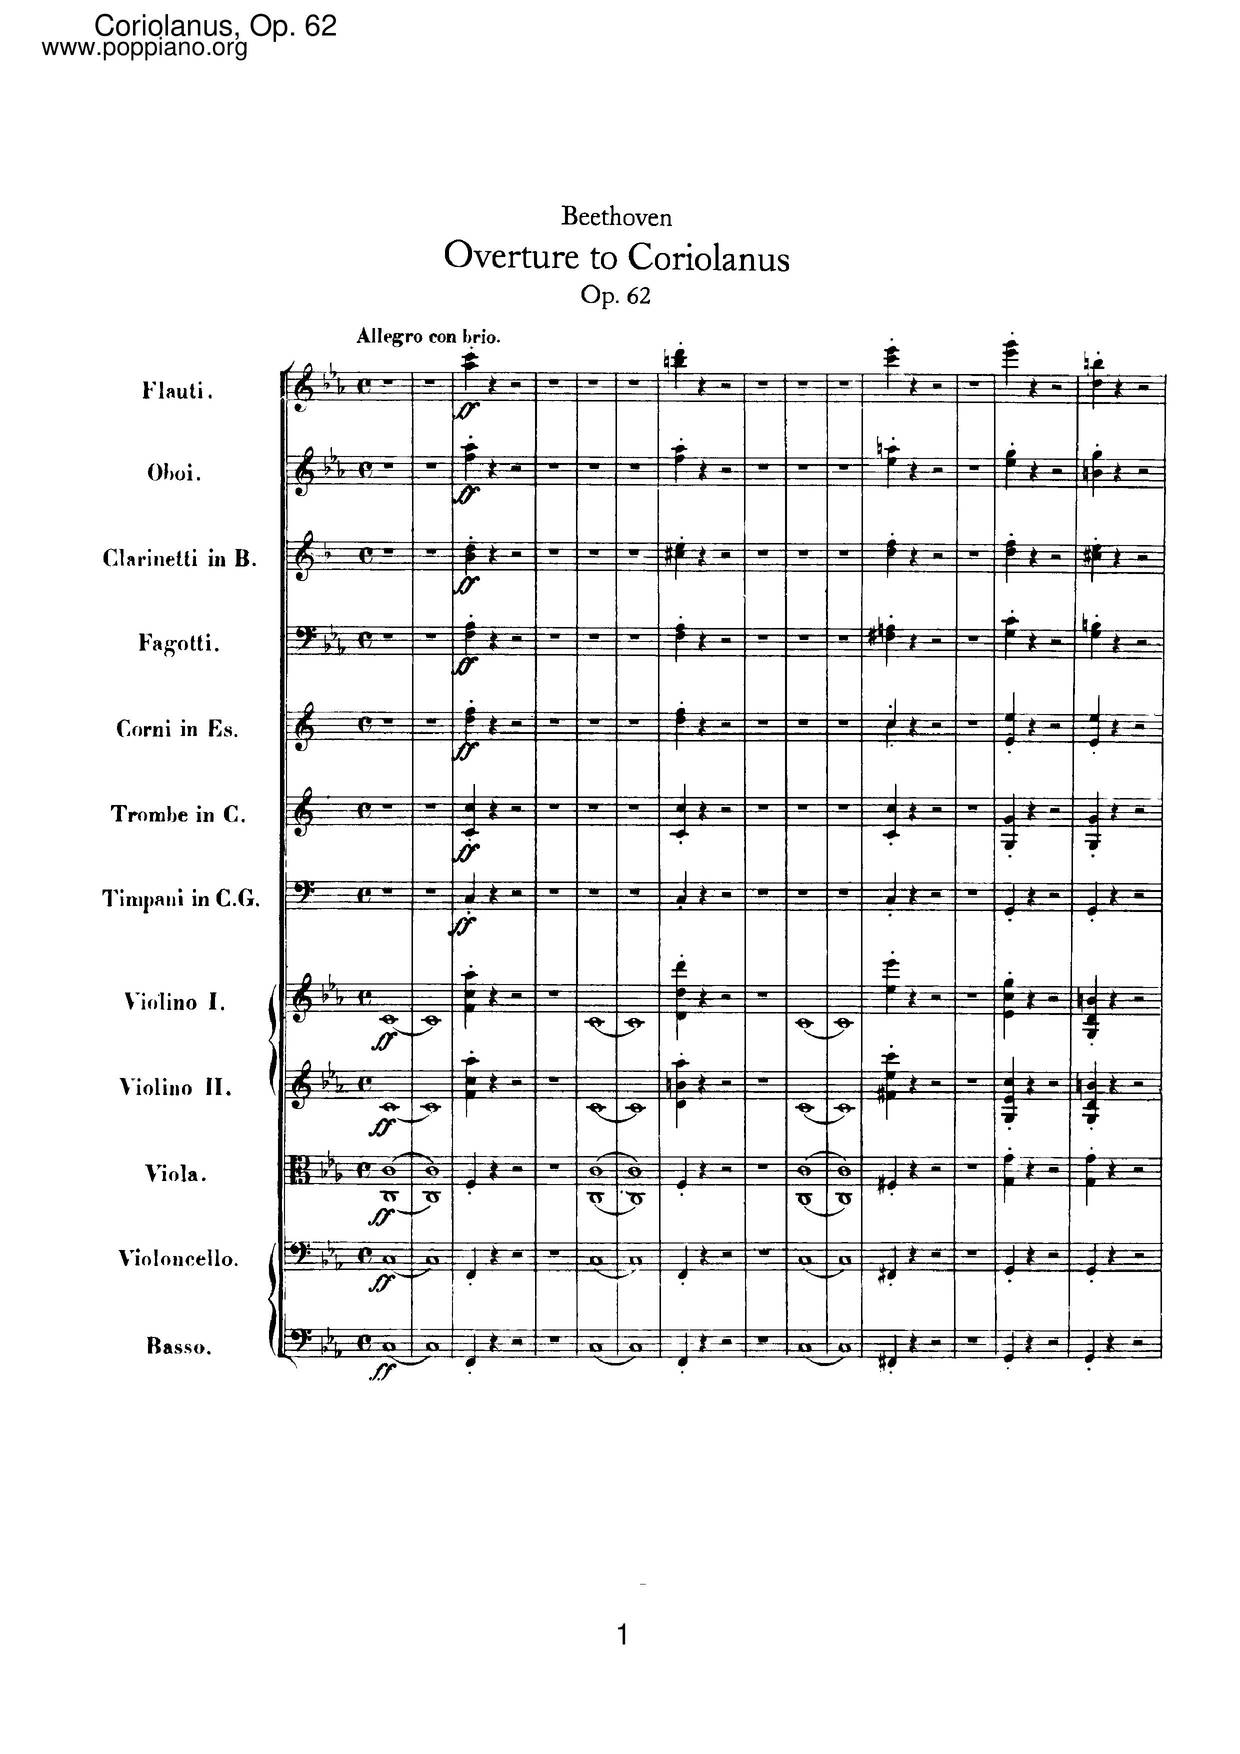 Coriolan Overture, Op. 62ピアノ譜